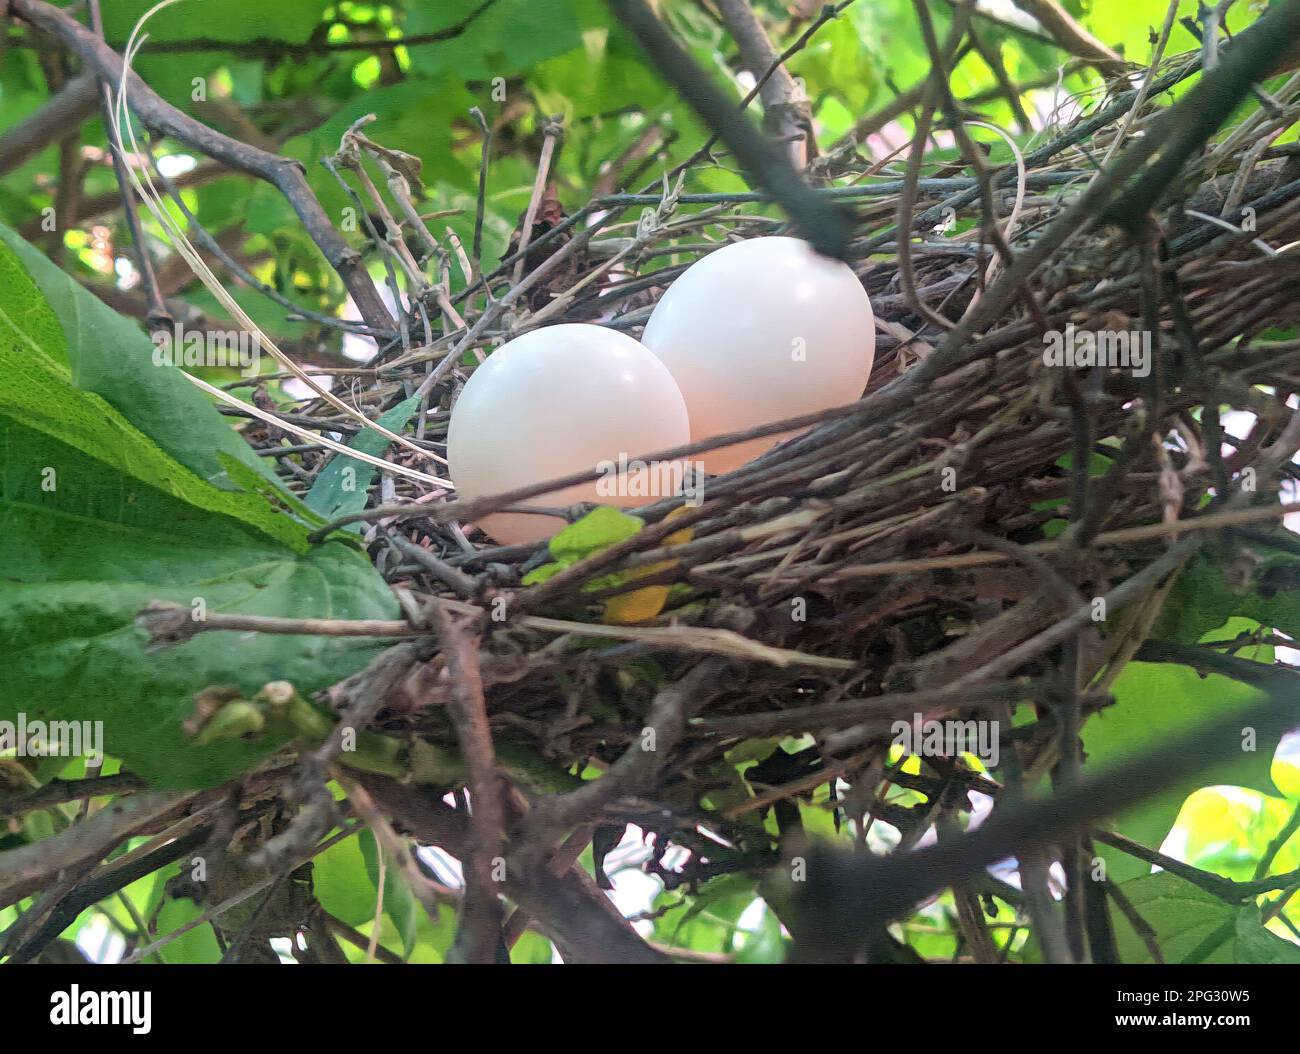 A beautiful bird egg stock photos and Photography Stock Photo - Alamy